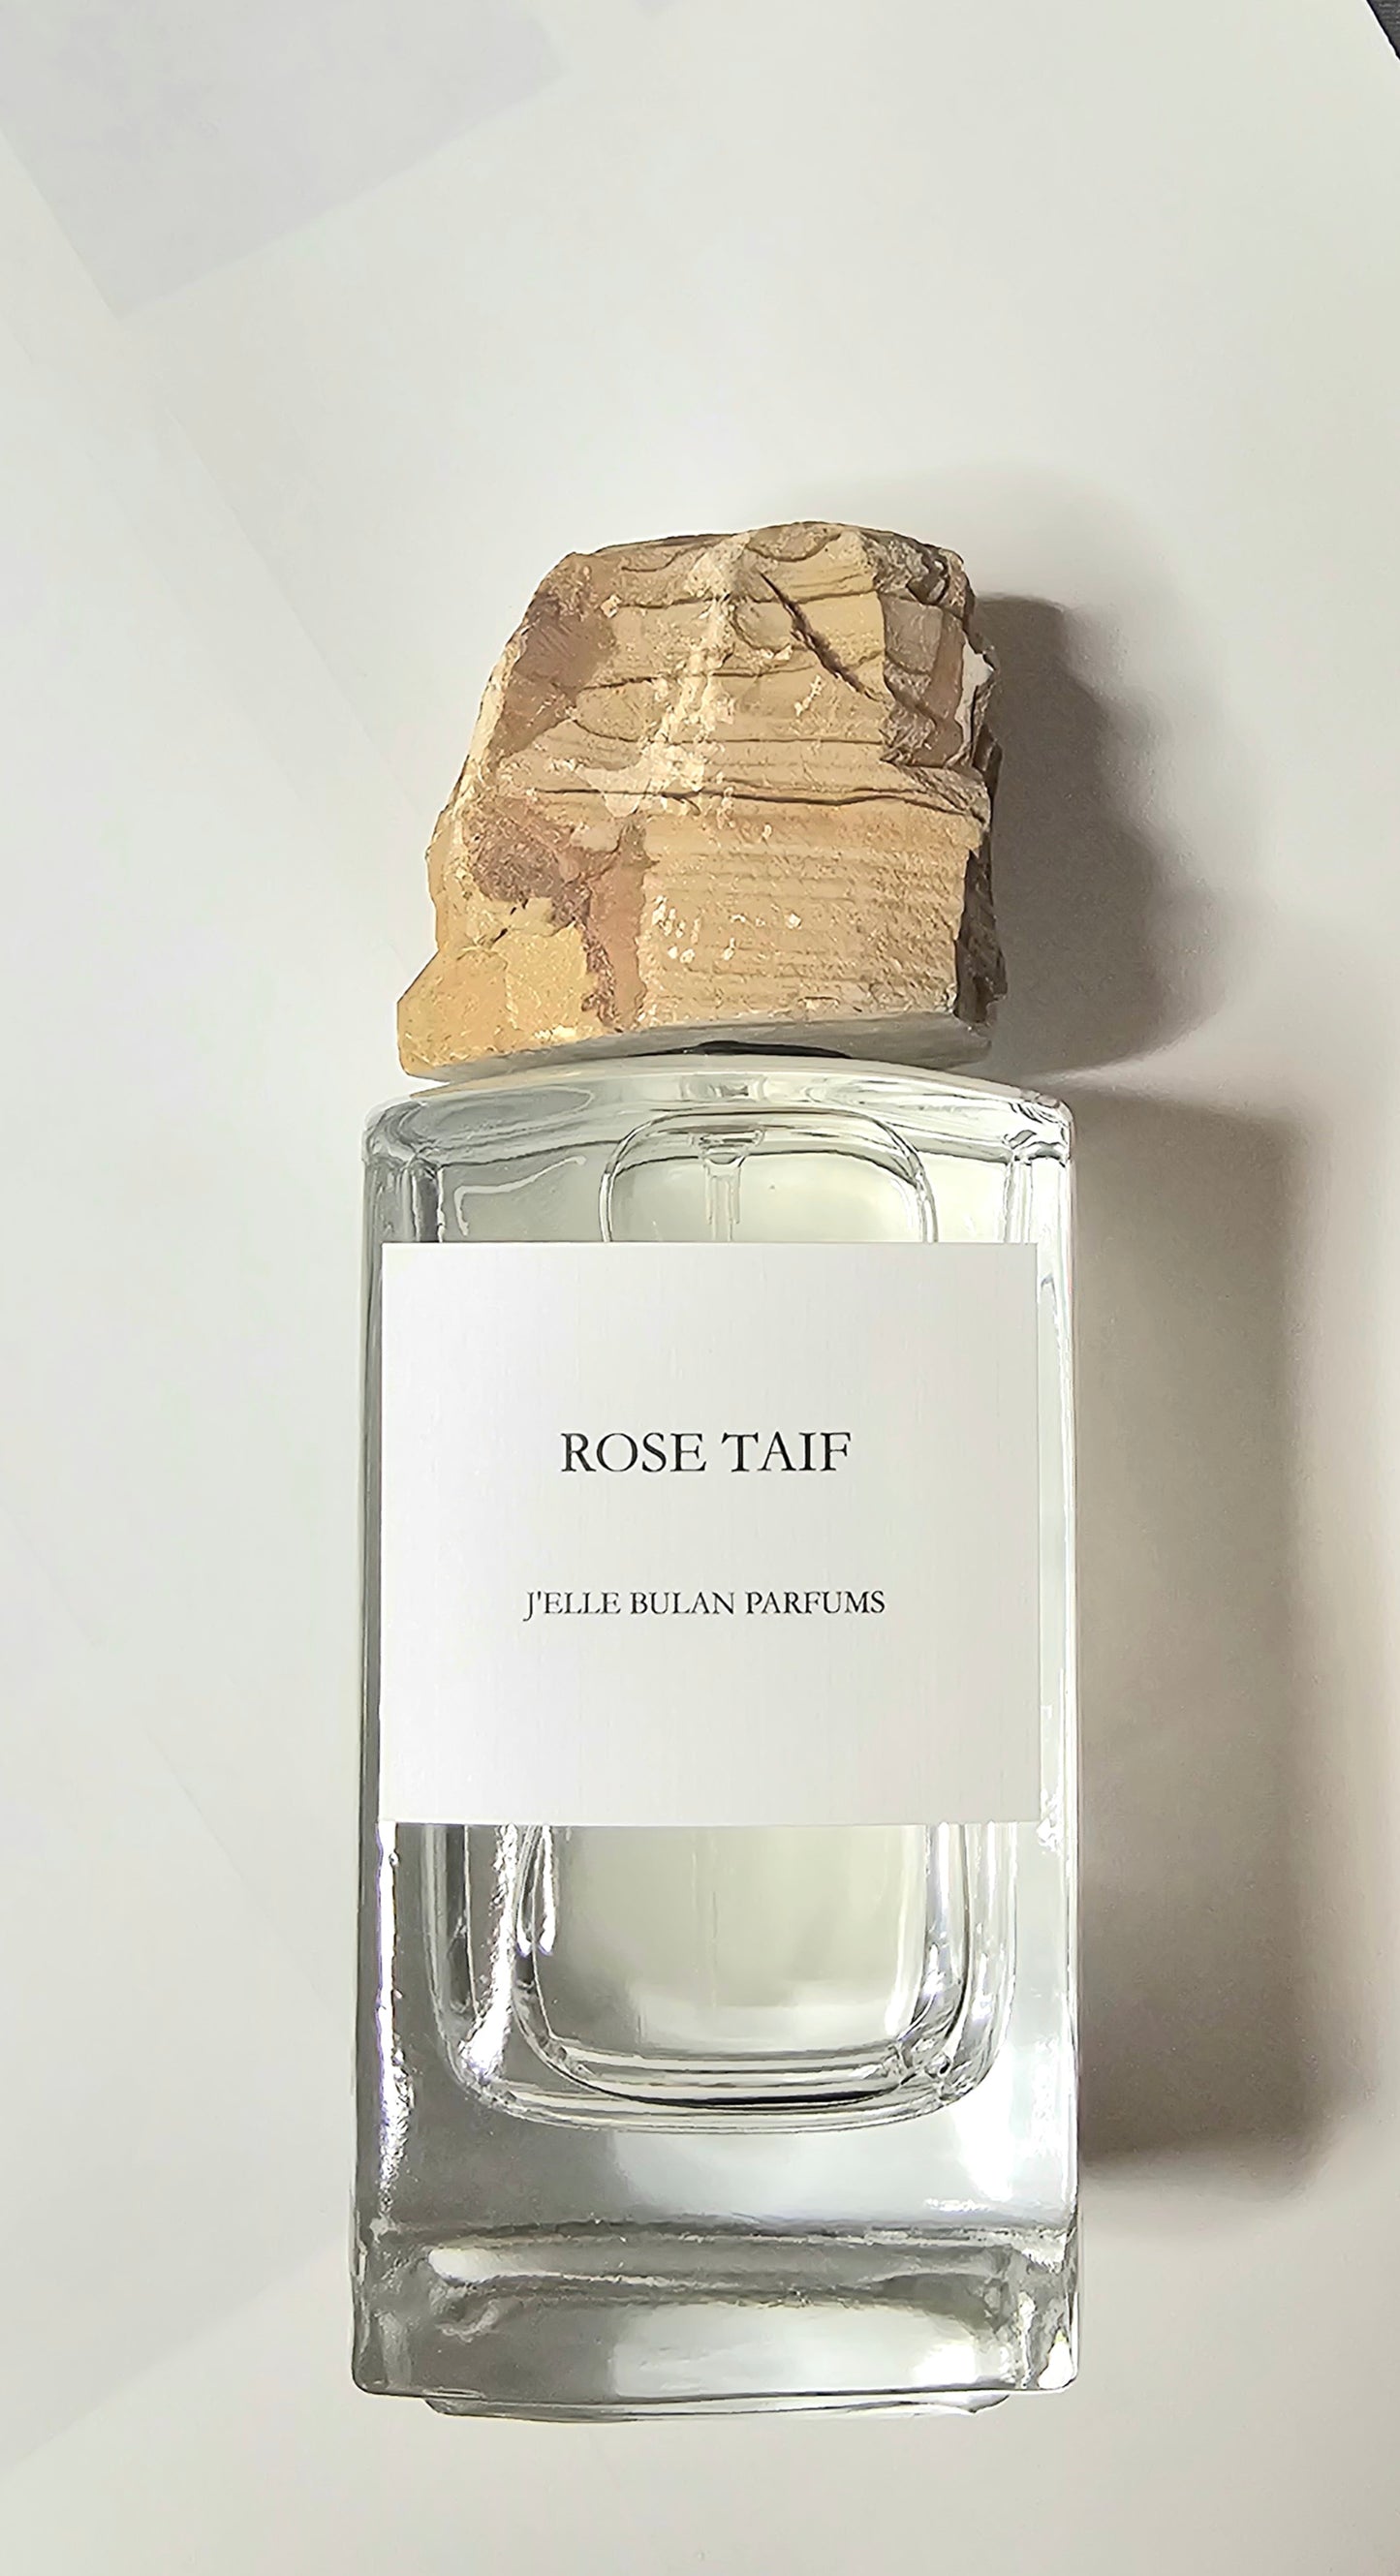 Rose Taif by J'Elle Bulan Parfums